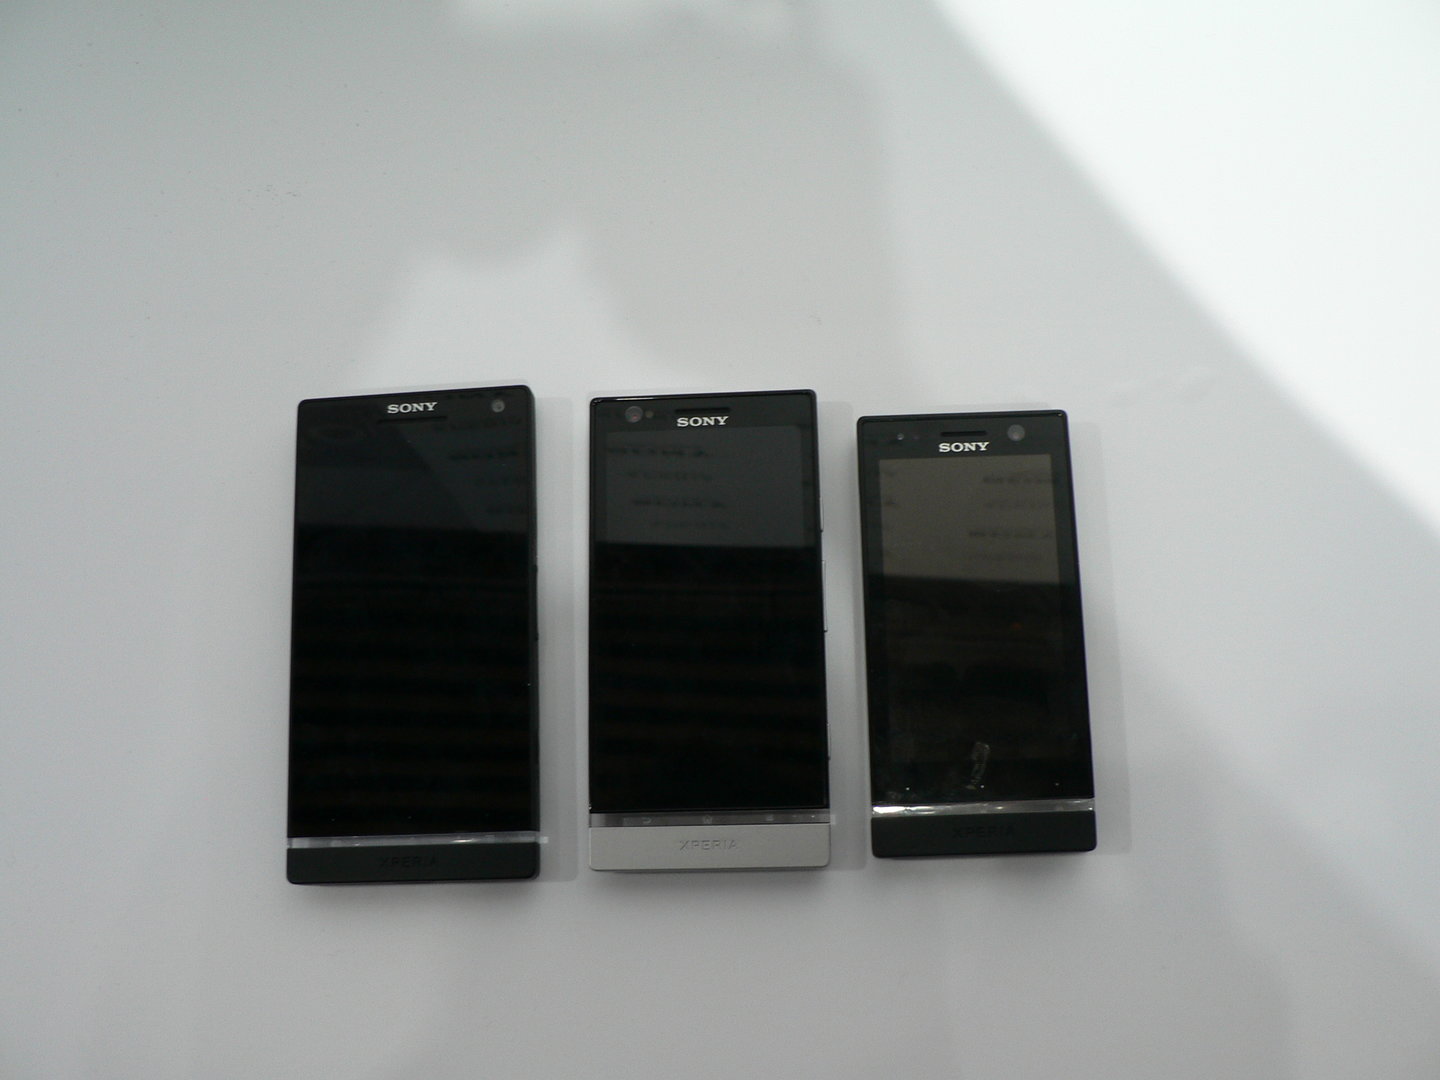 Sony Xperia S, Xperia P und Xperia U